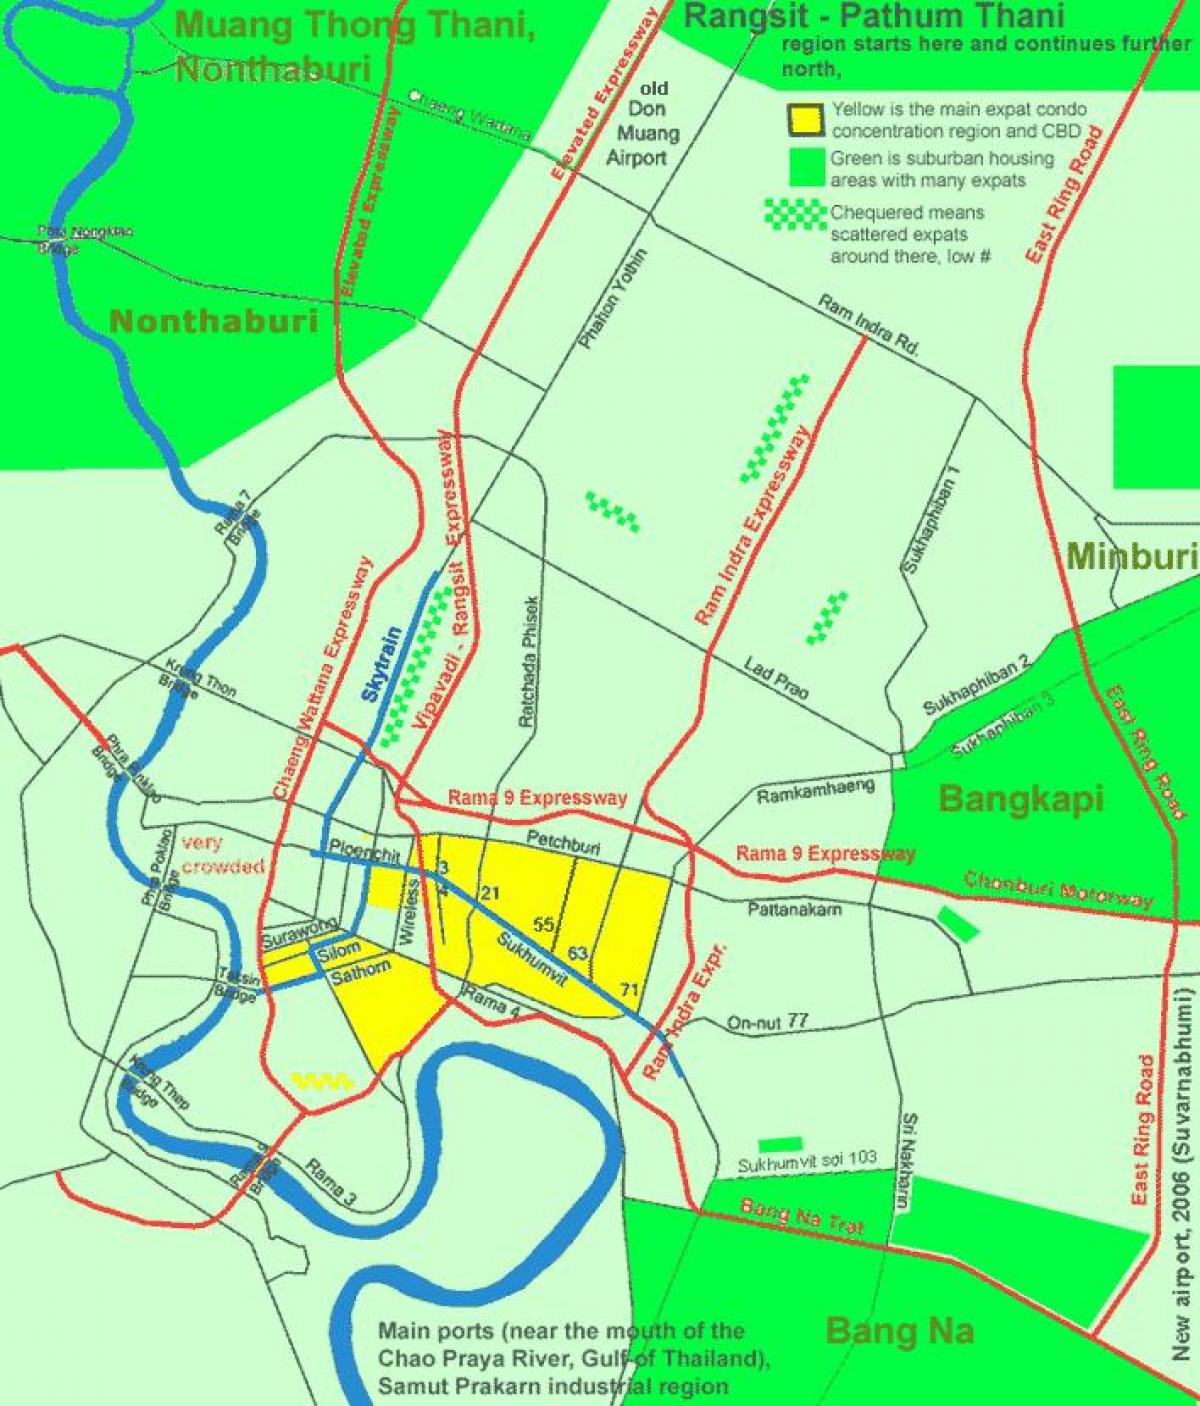 بینکاک کے مرکز میں علاقے کا نقشہ